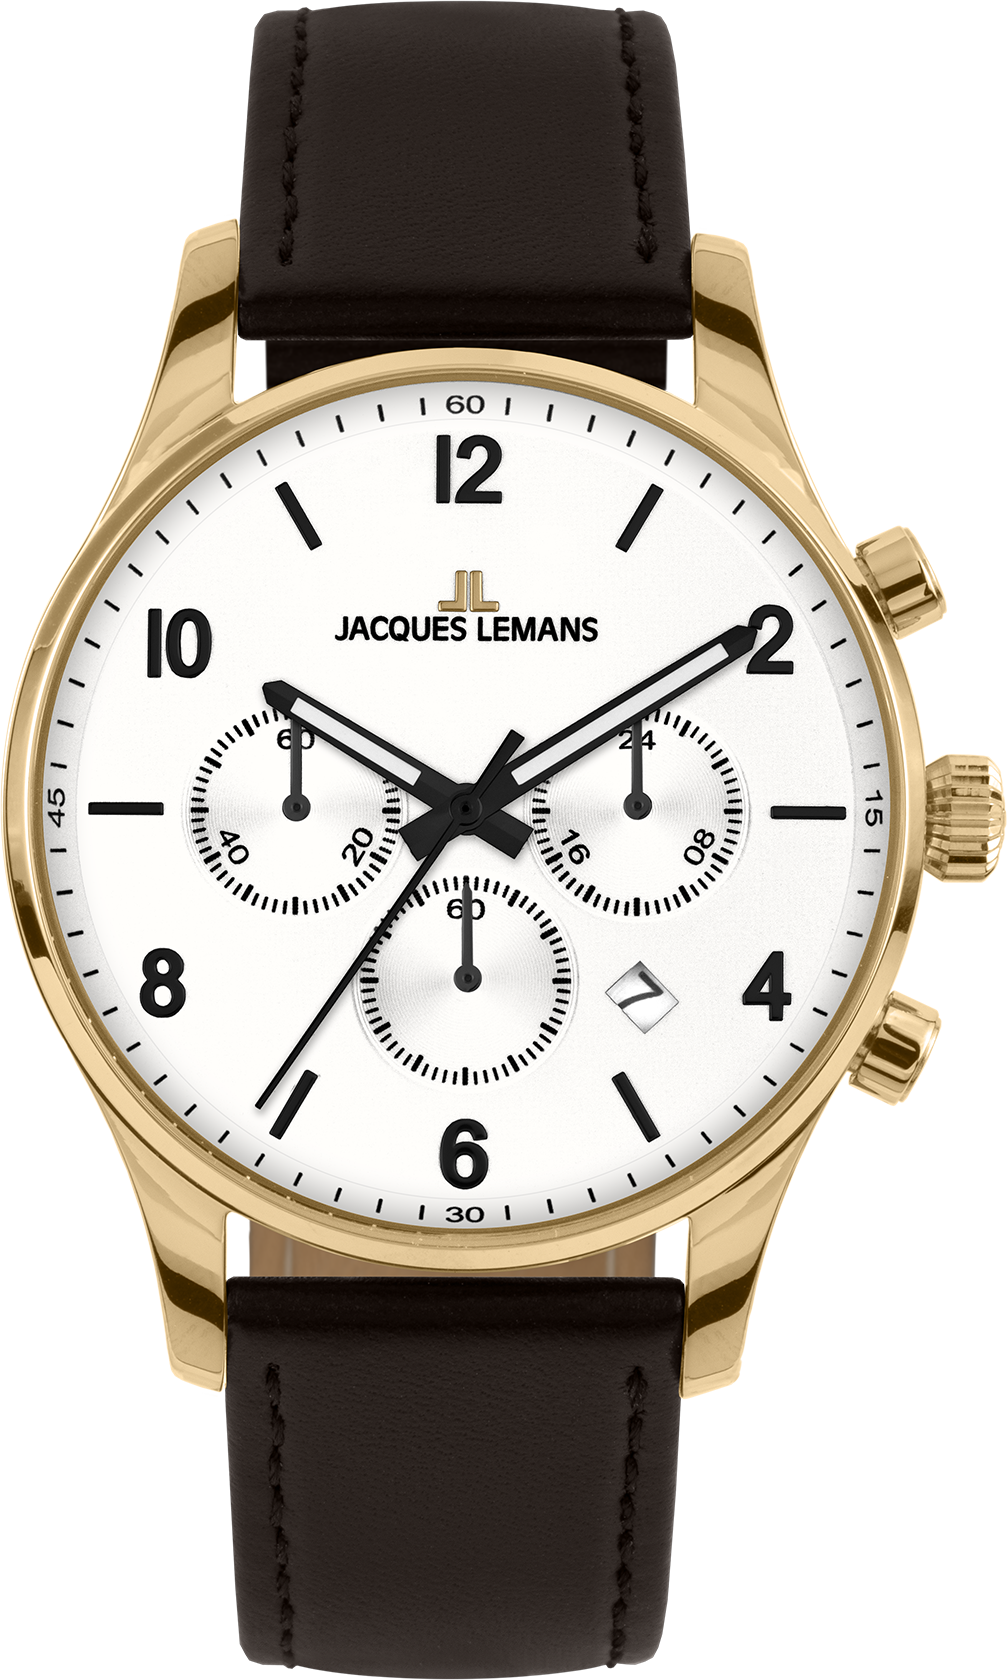 Watch Planet Часы Сlassic Lemans от компании Jacques